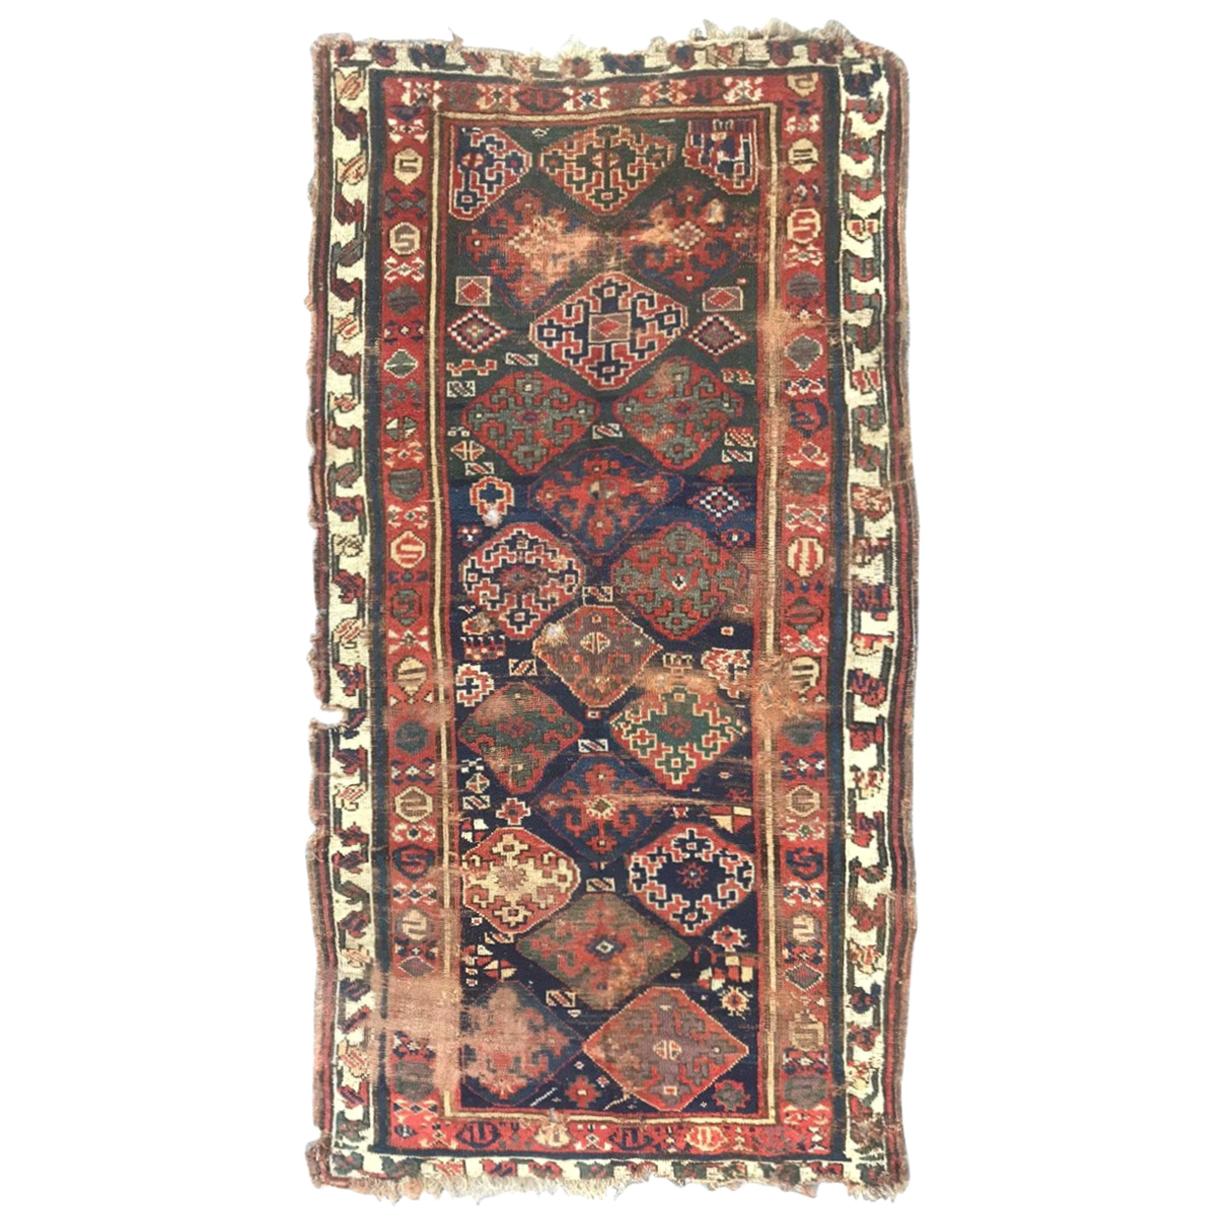 Schöner antiker kurdischer nordwestlicher Teppich im Used-Stil mit Sammlerstücken